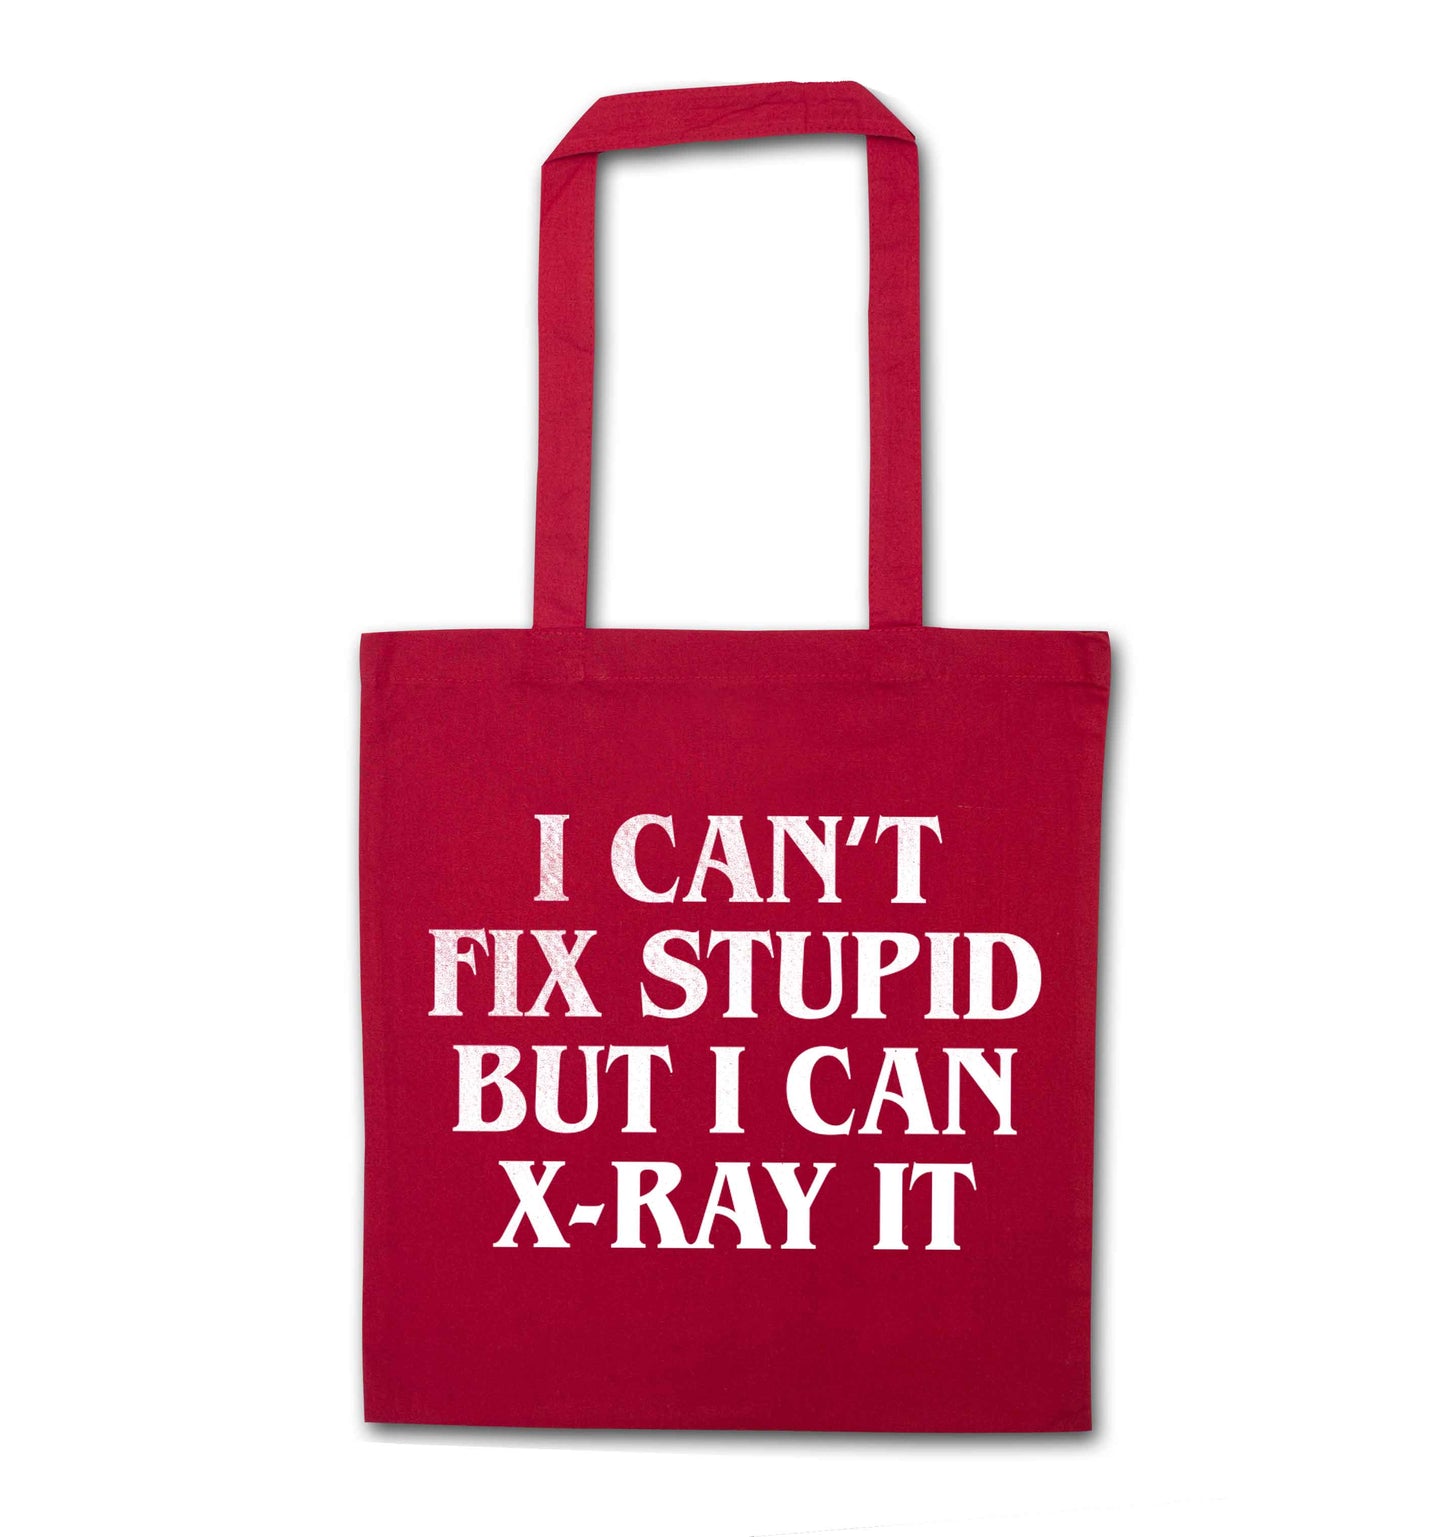 I can't fix stupid but I can X-Ray it red tote bag